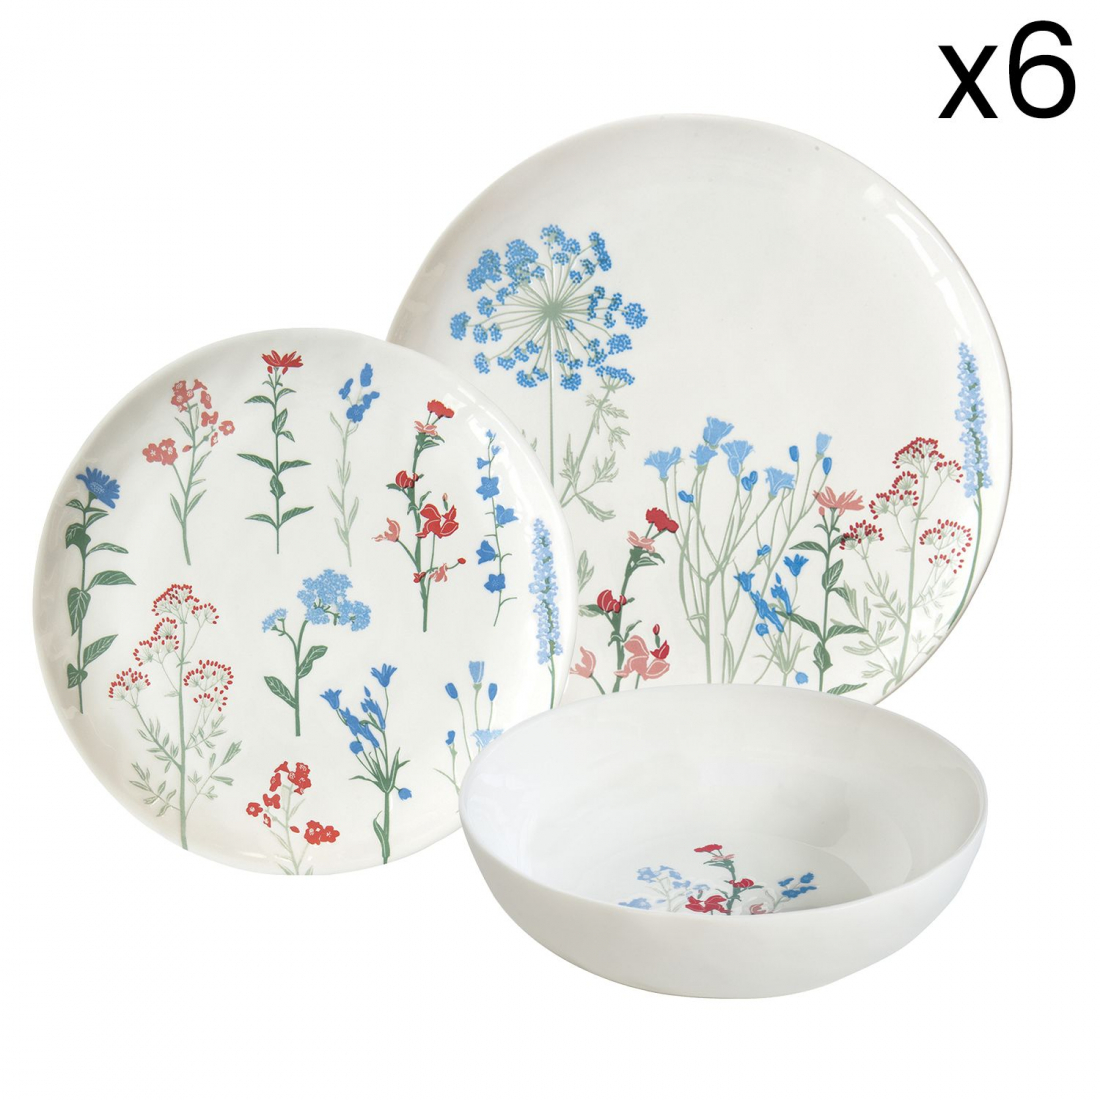 Set 12 Plates (4 Side Plates. 4 Soup Plates. 4 Dinner Plates) Mille Fleurs